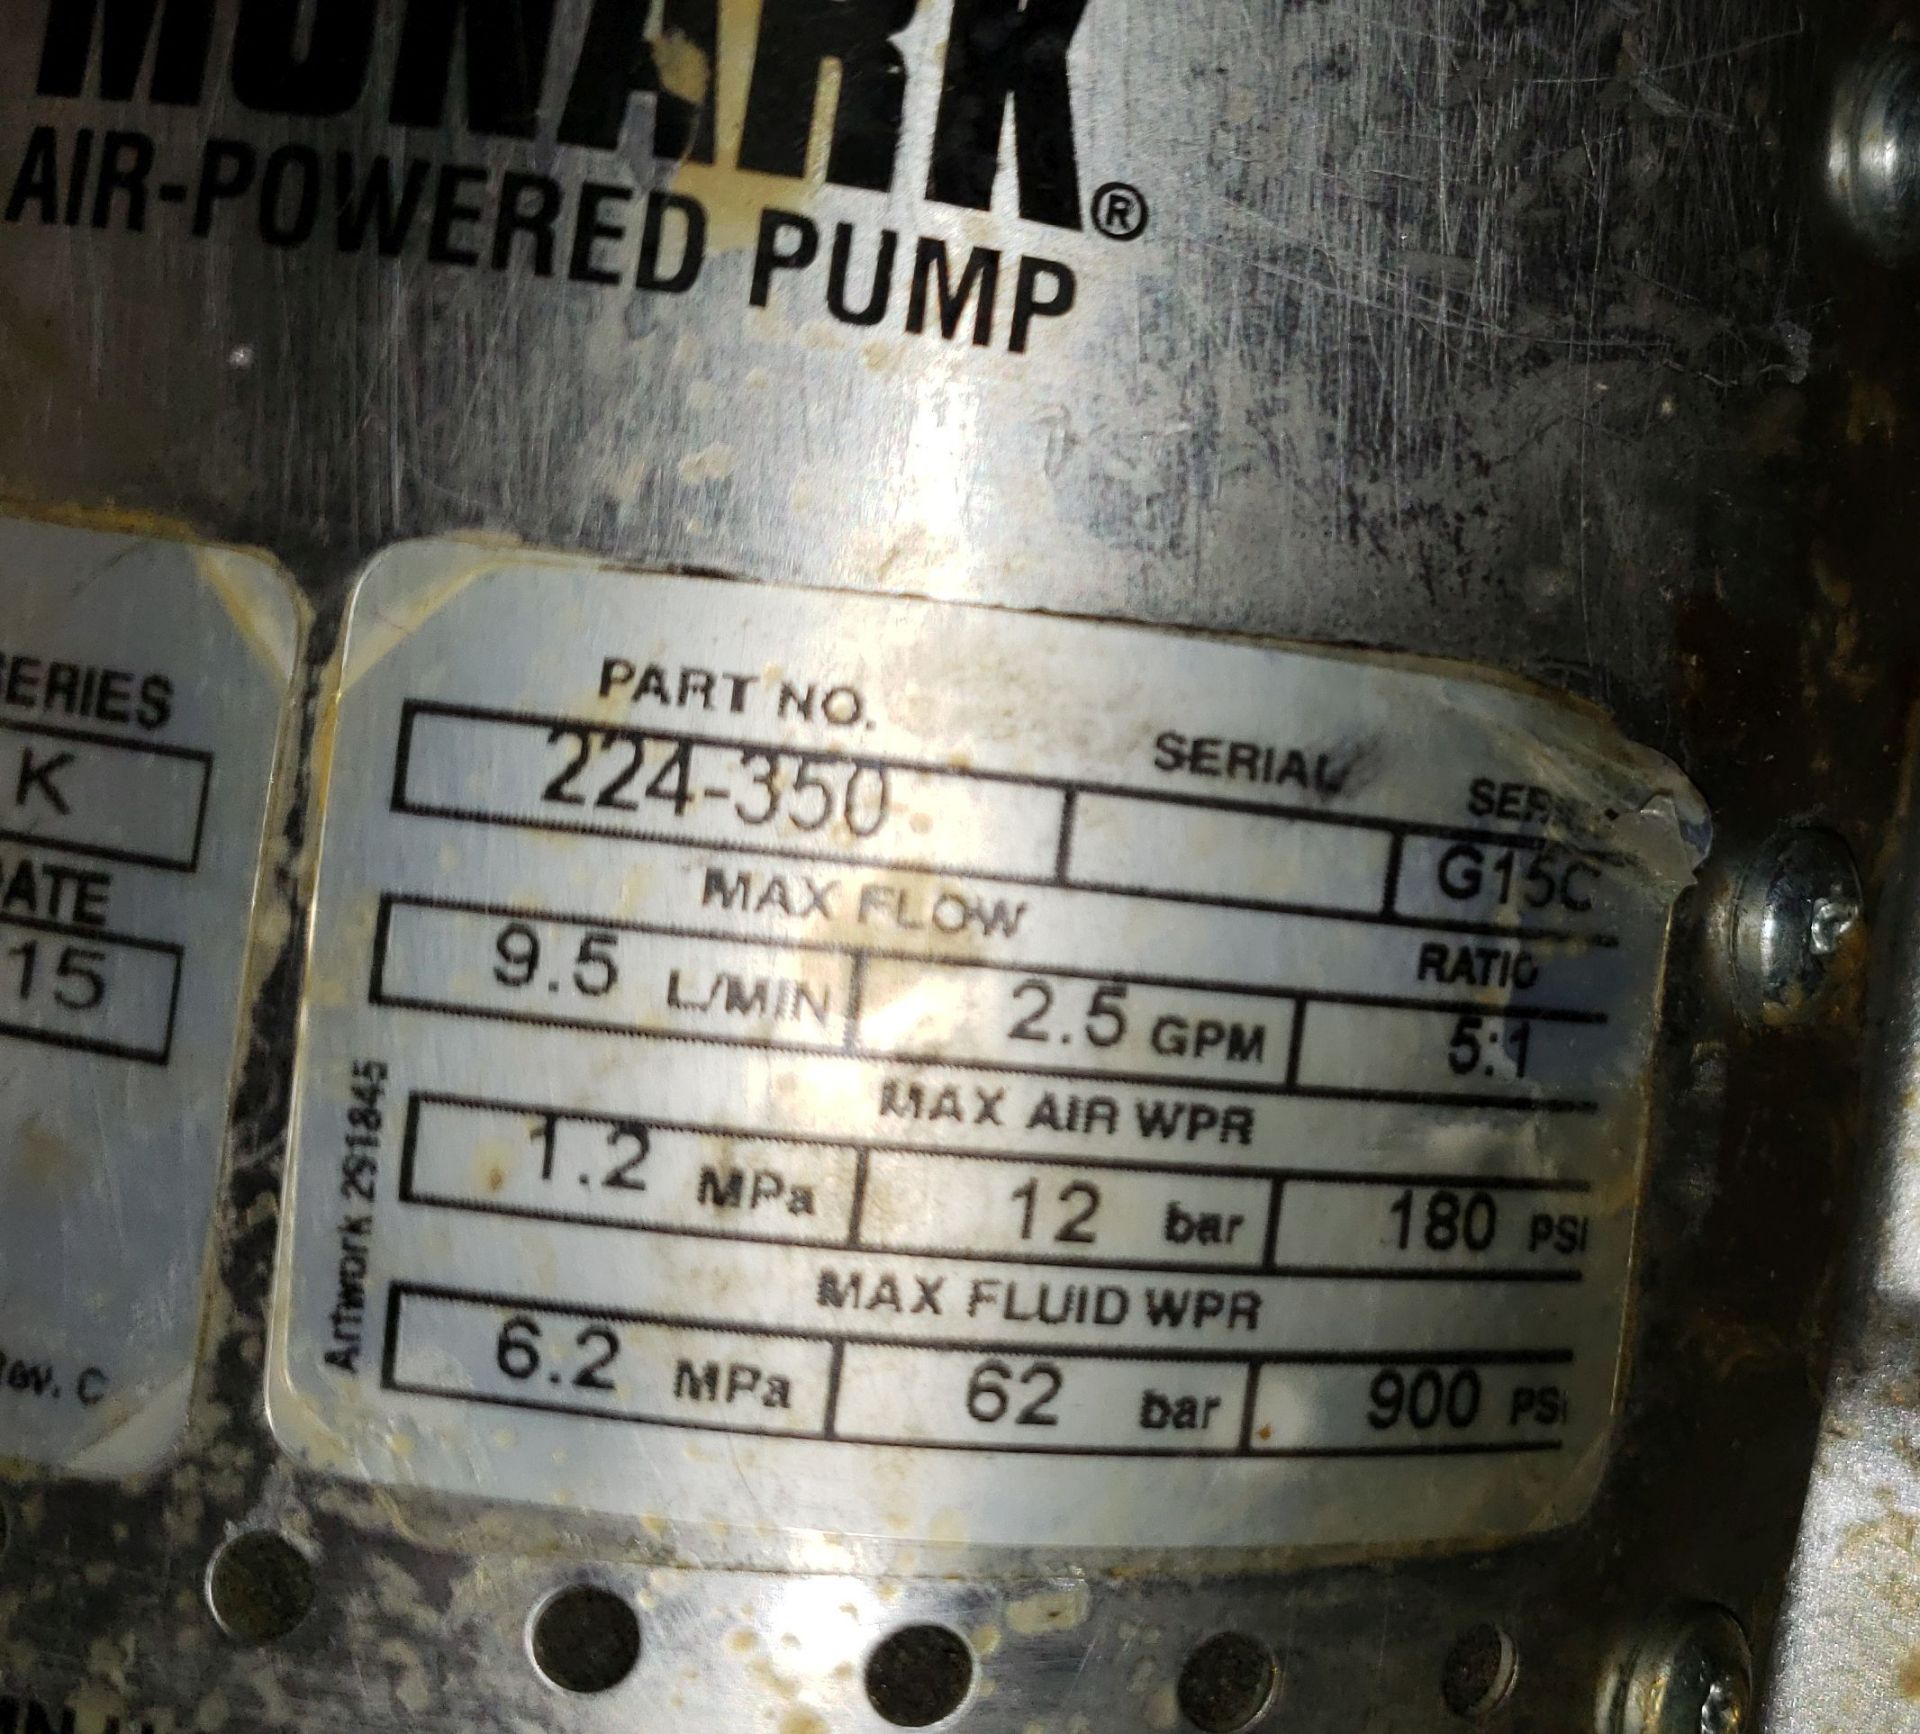 Graco Drum Pump AIR POWERED MODEL MONARK 9.5L/MIN MAX FLOW - Image 7 of 19